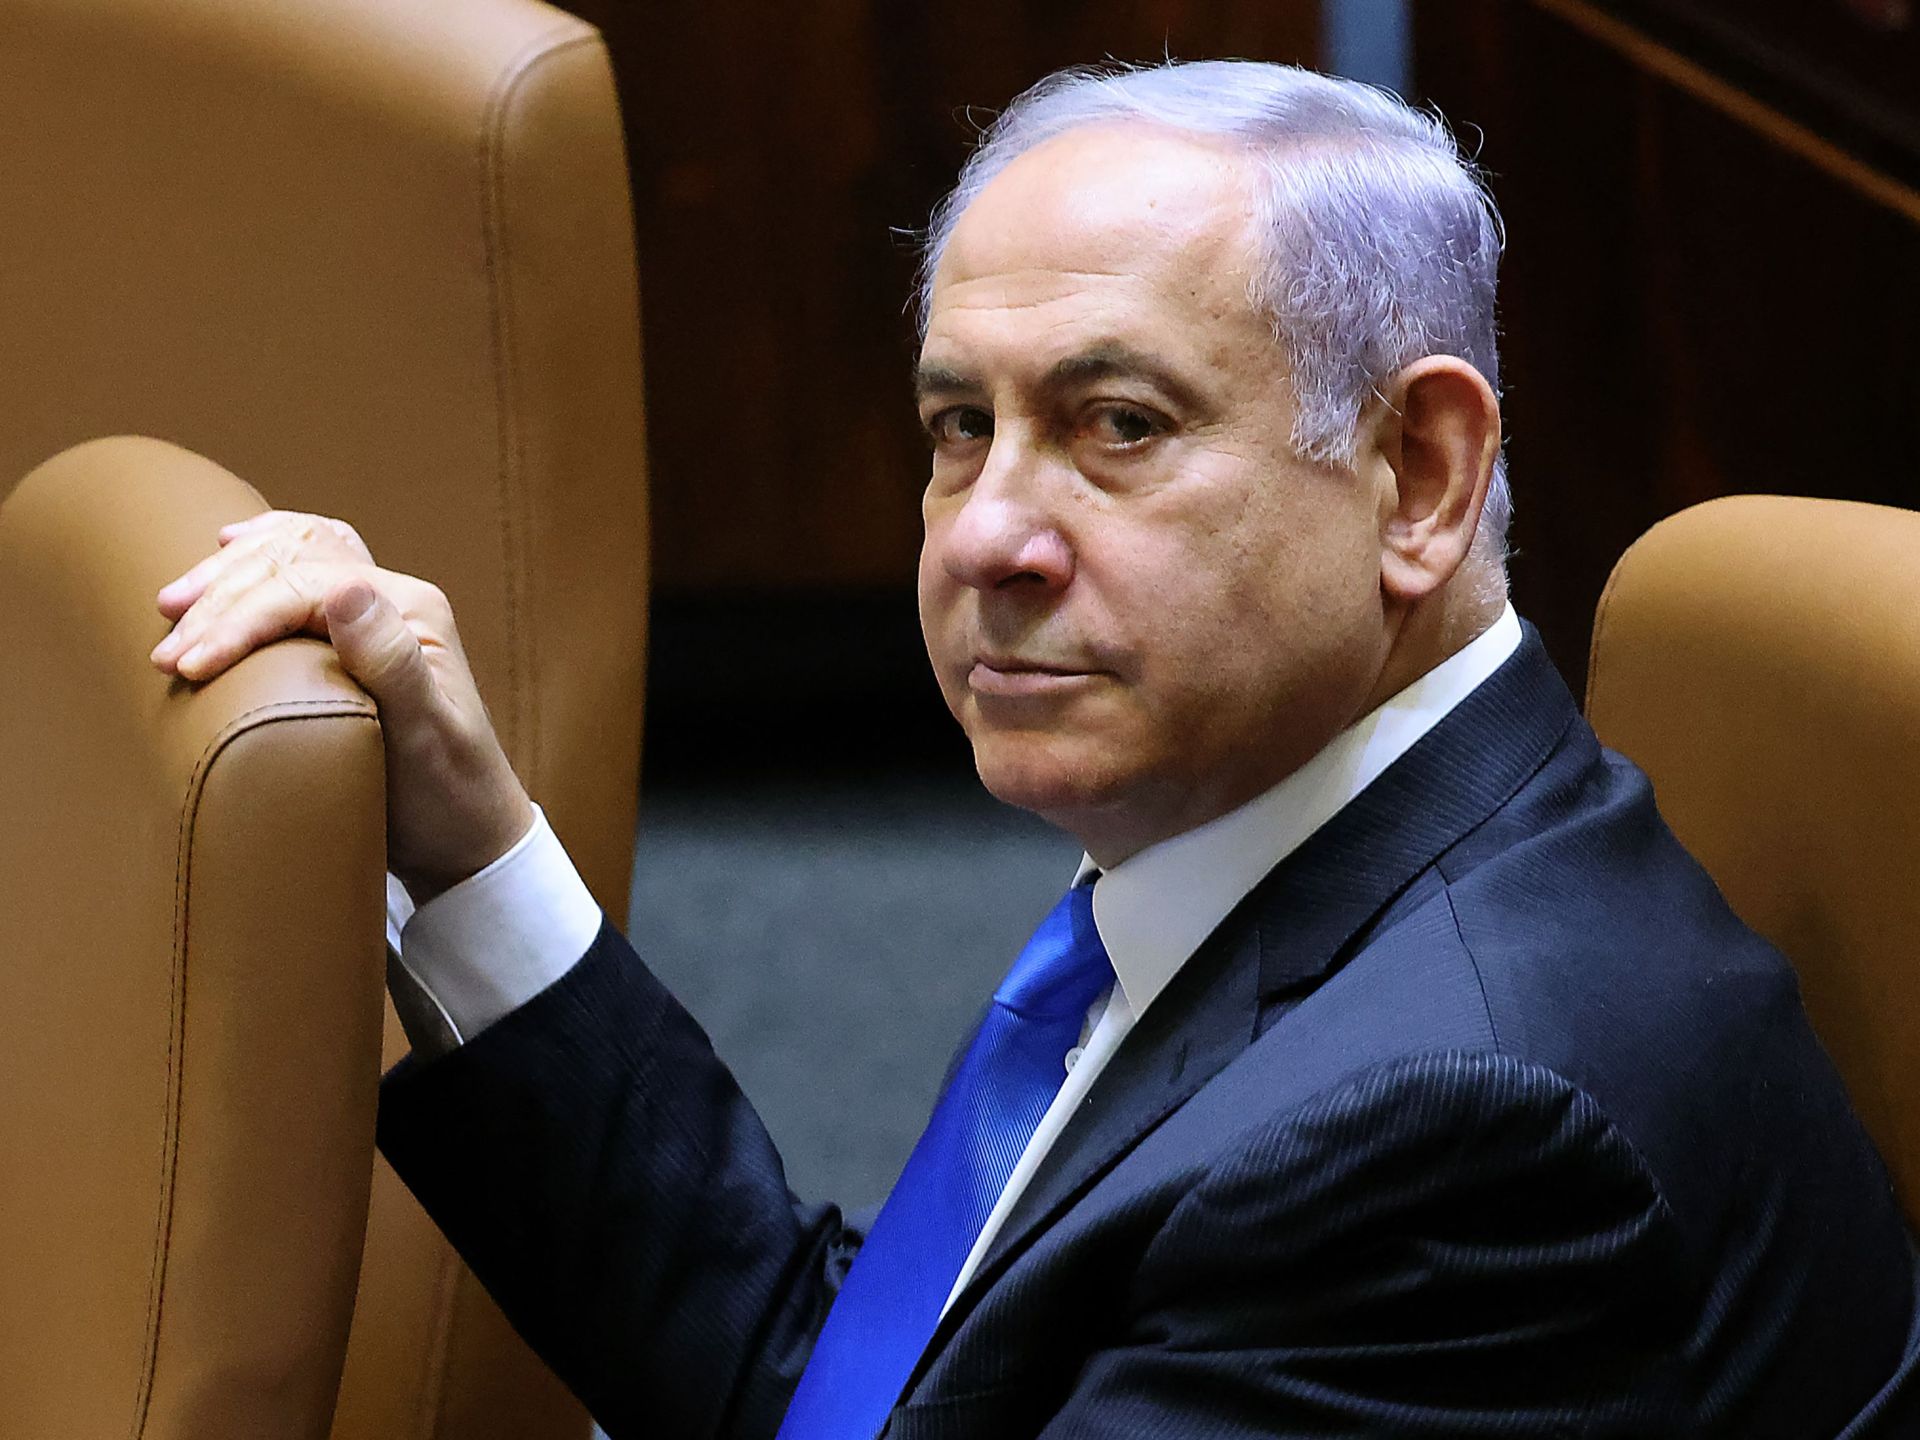 نتنياهو يزعم أن الدولة الفلسطينية ستكون “إرهابية” | أخبار – البوكس نيوز